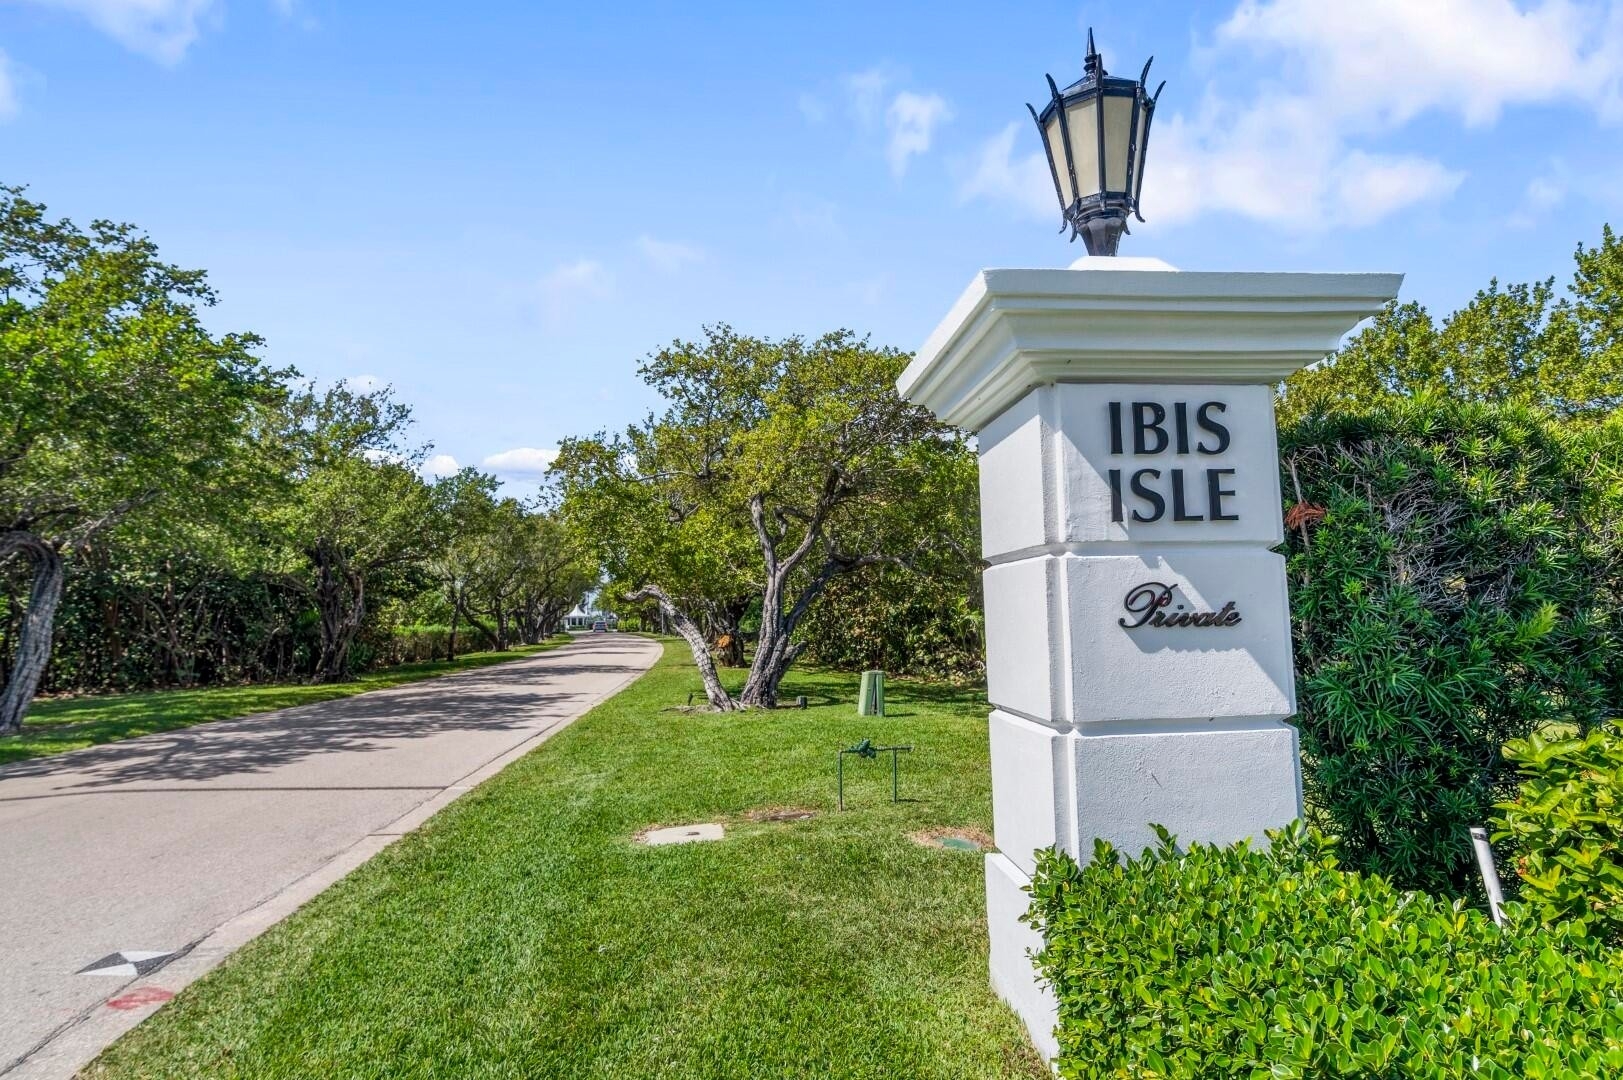 23. Condominiums for Sale at 2195 Ibis Isle Road, 1 Ibis Isle, Palm Beach, FL 33480